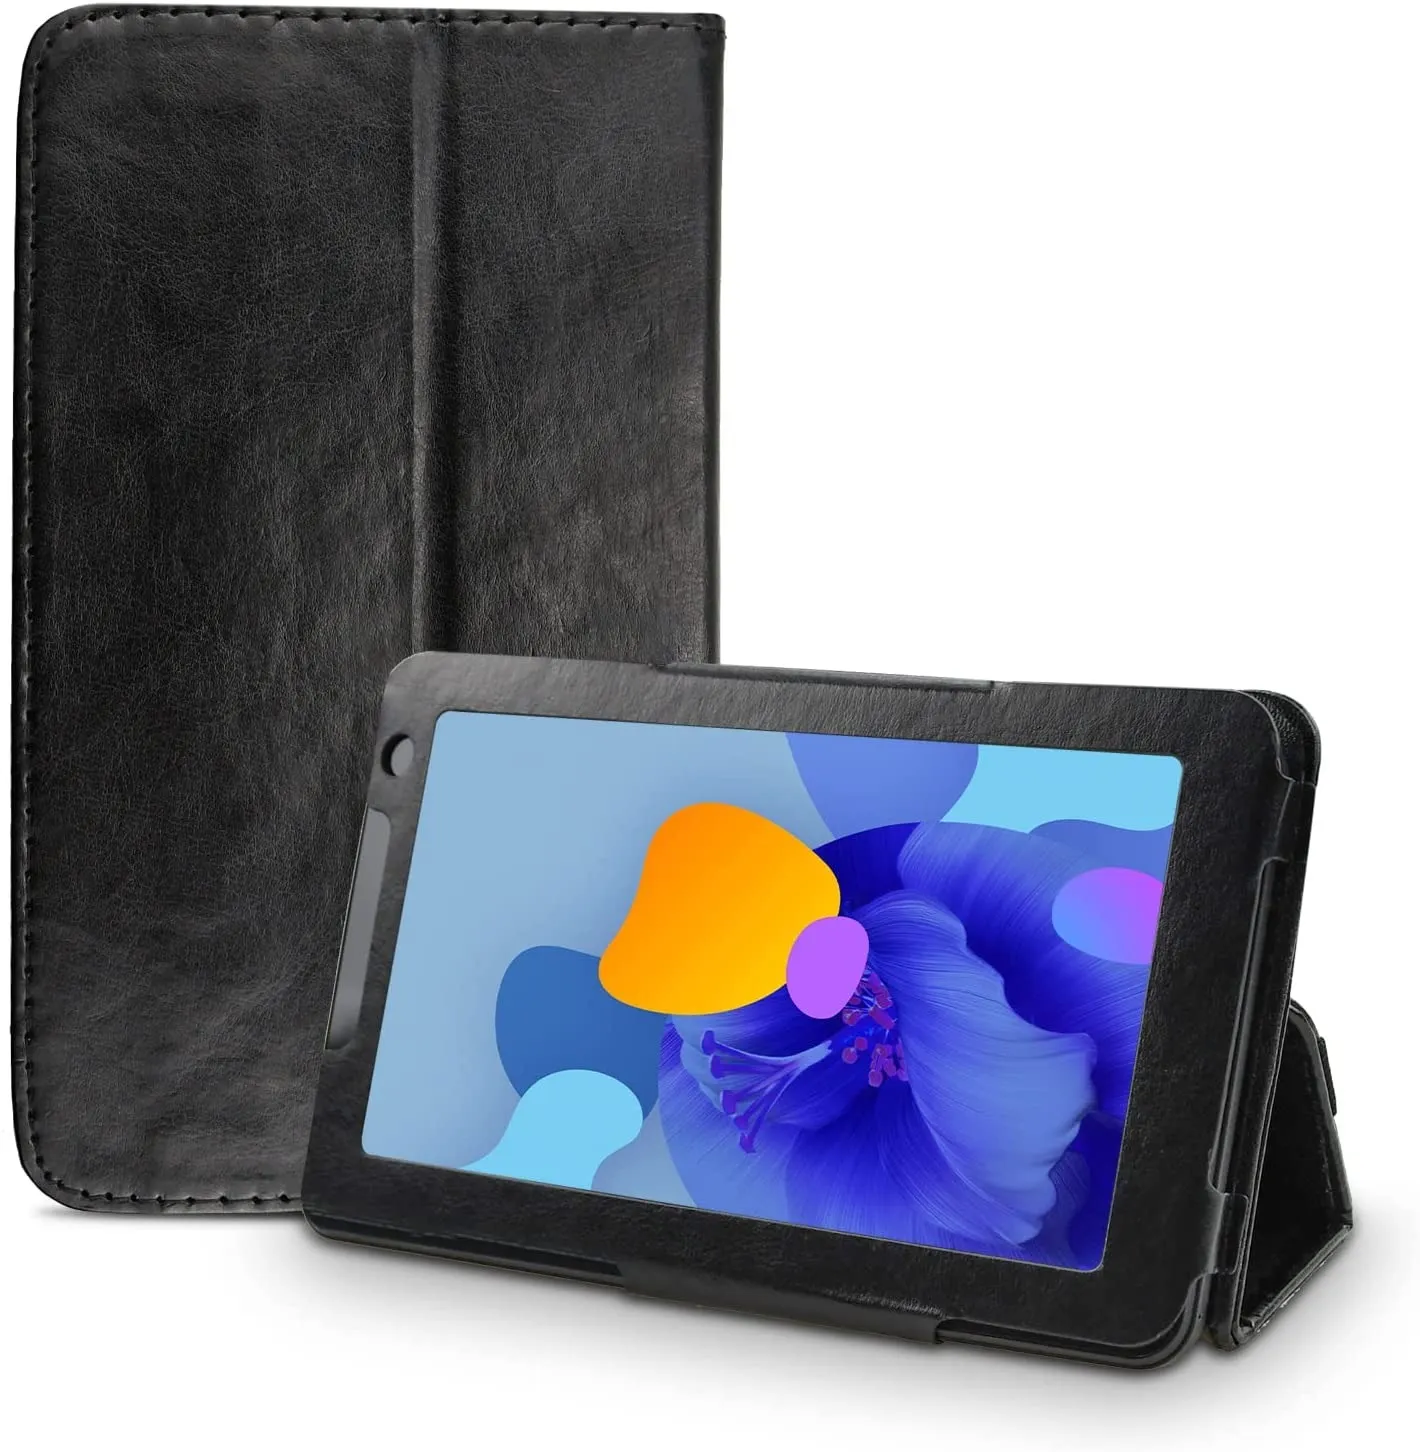 M101 10 inç Tablet Kılıfı, Premium Darbeye Dayanıklı Stand Kılıfı, İnce Katlanır Stand Kapağı Yalnızca MAGCH M101 Tablet için Uygundur